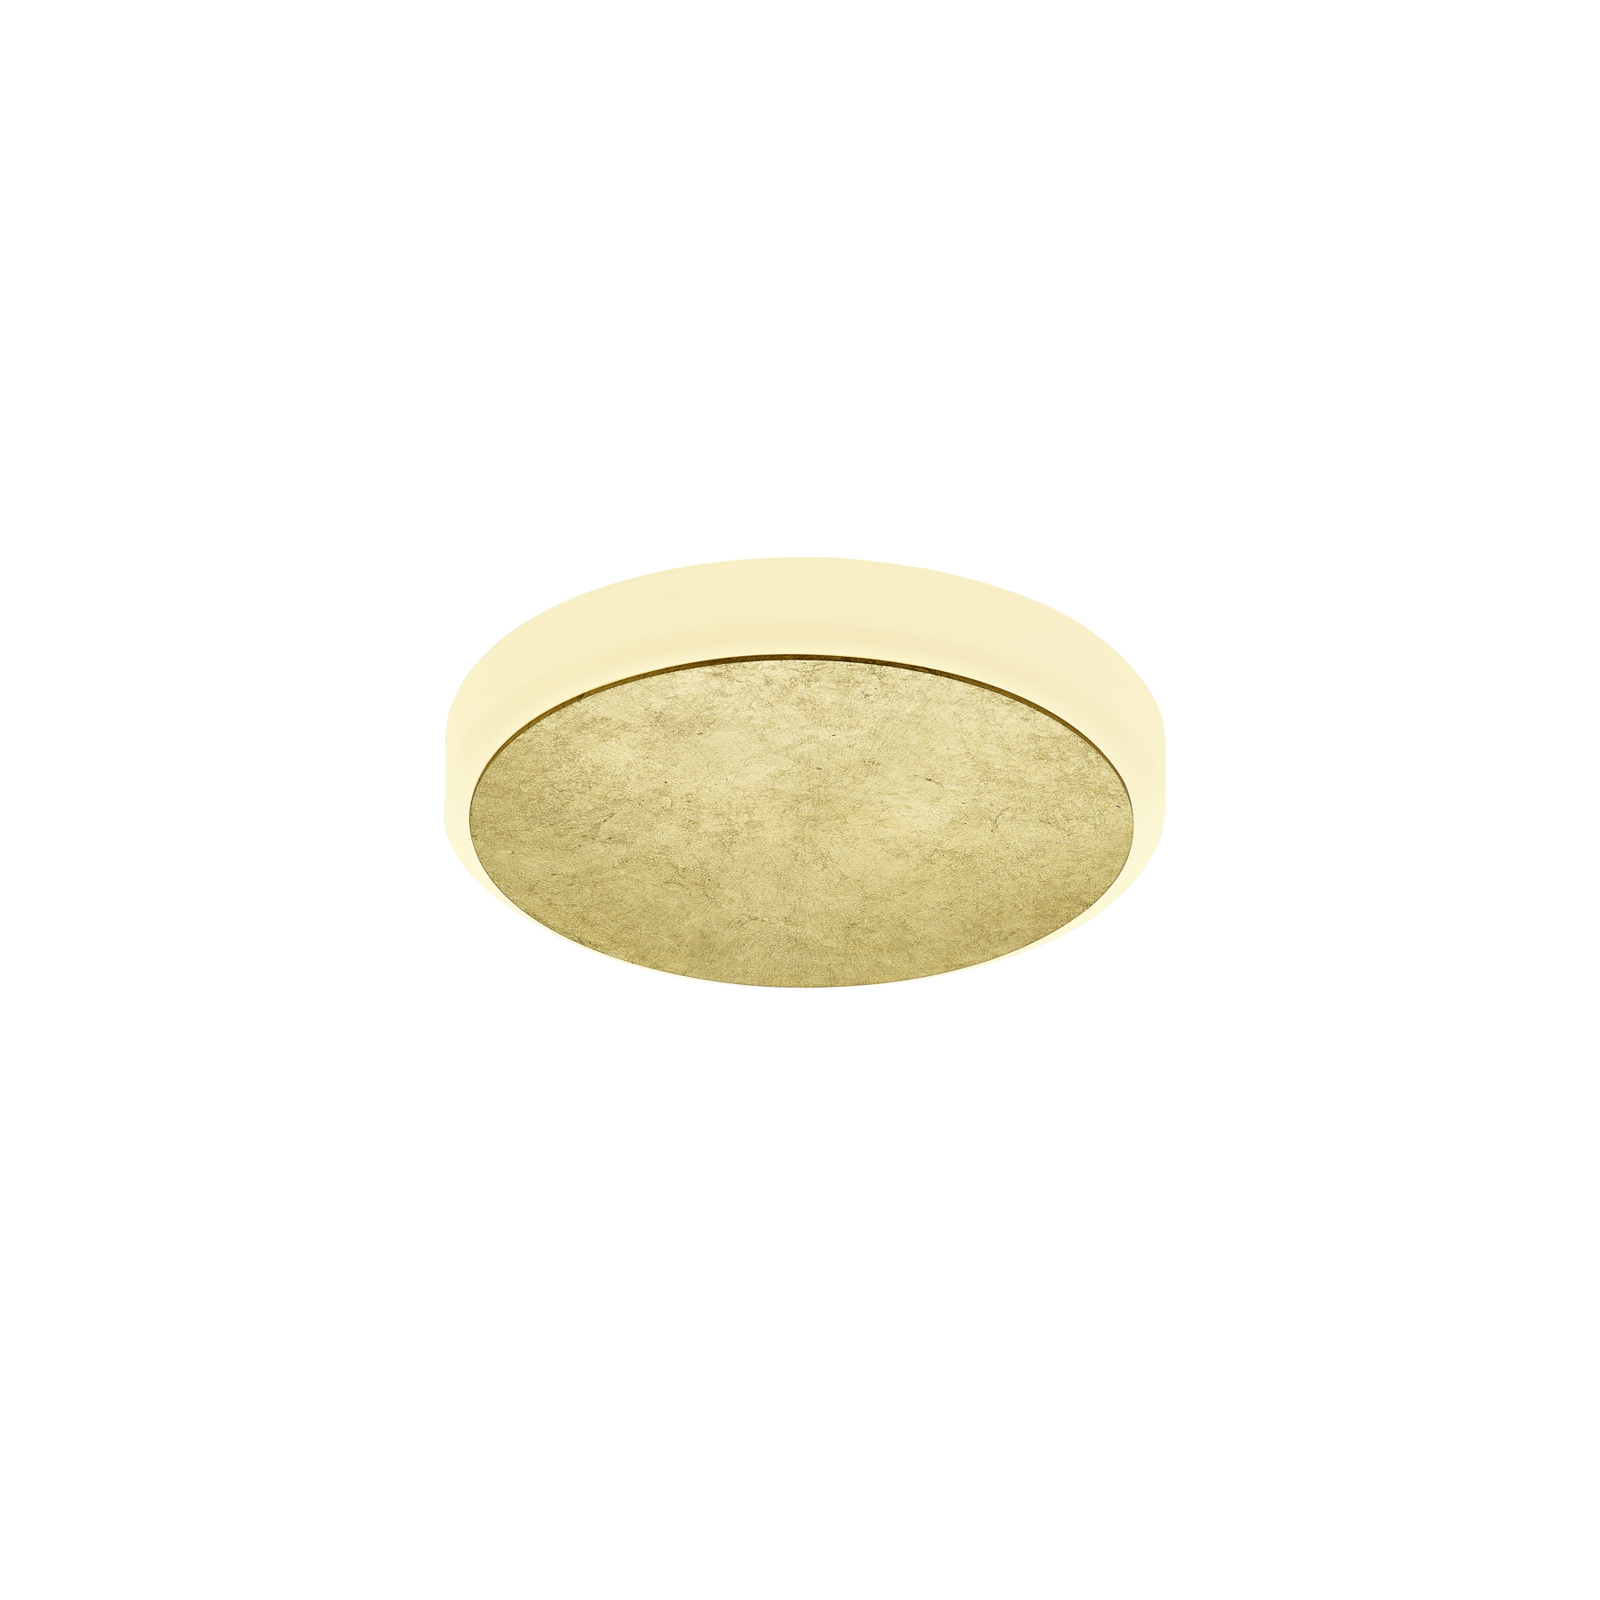 BANKAMP Luce elevata Button parete oro in foglia